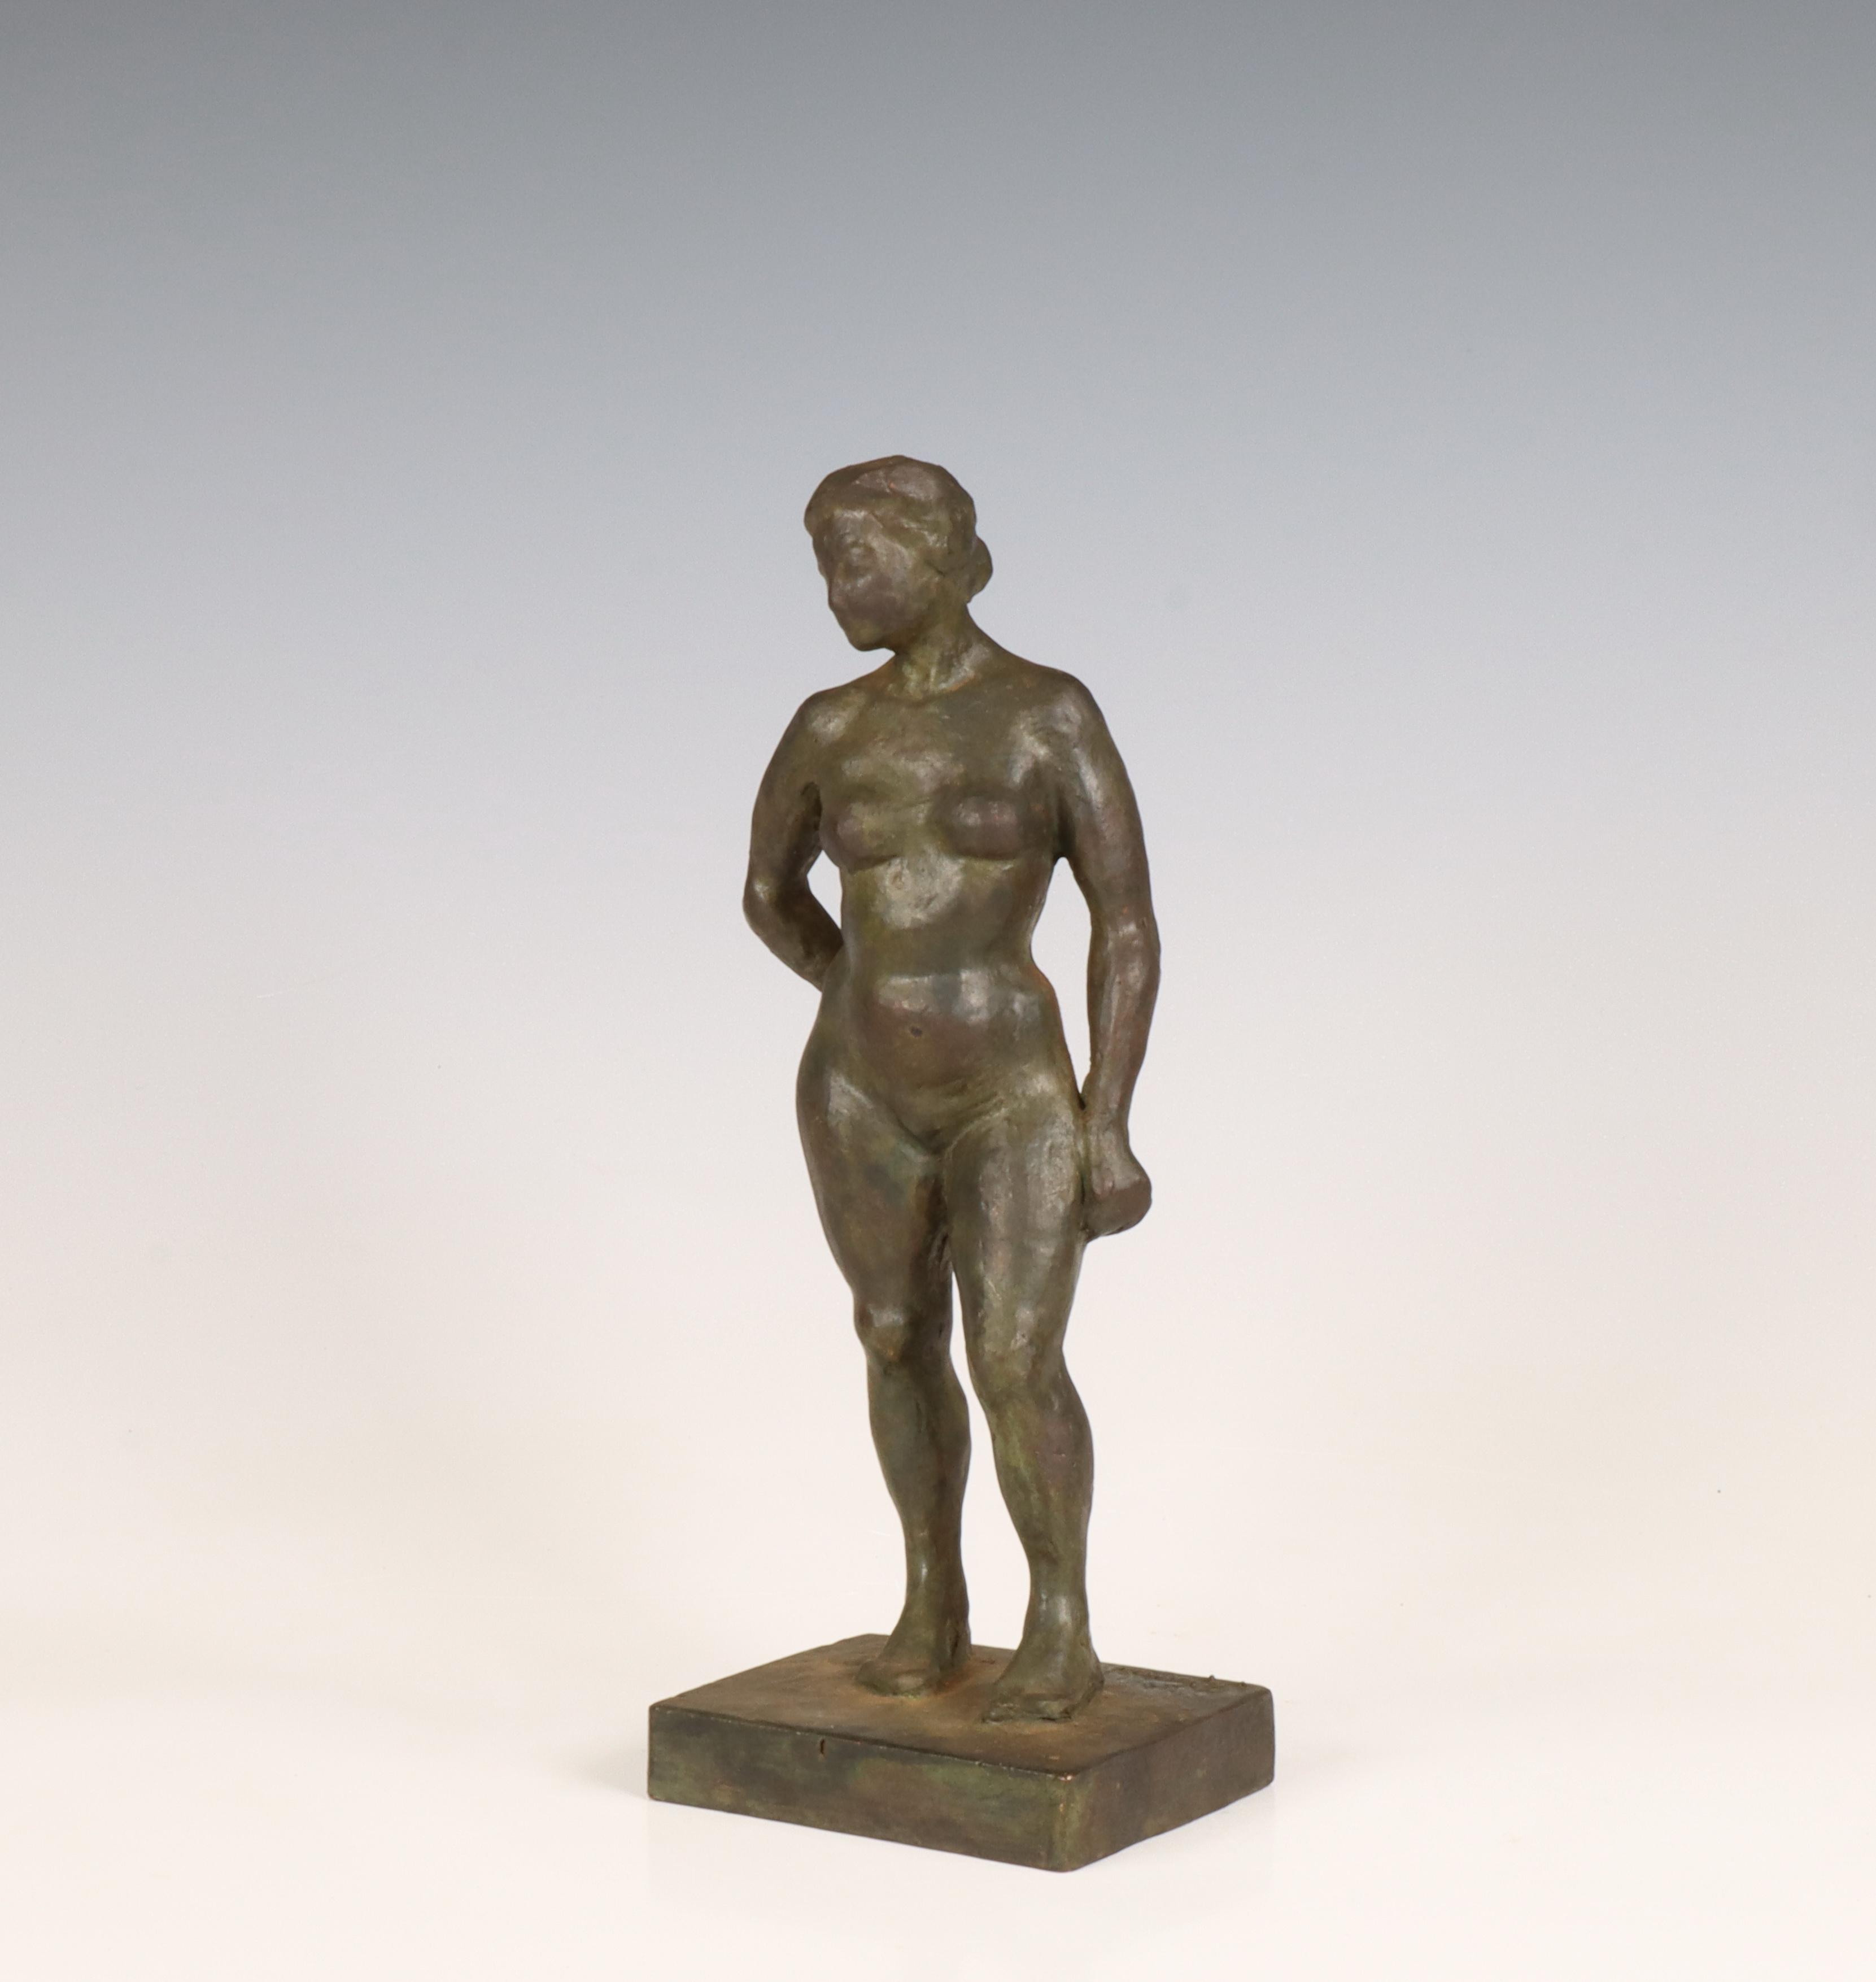 George Grard (1901-1984) Groen gepatineerd bronzen sculptuur staand naakt, circa 1950.